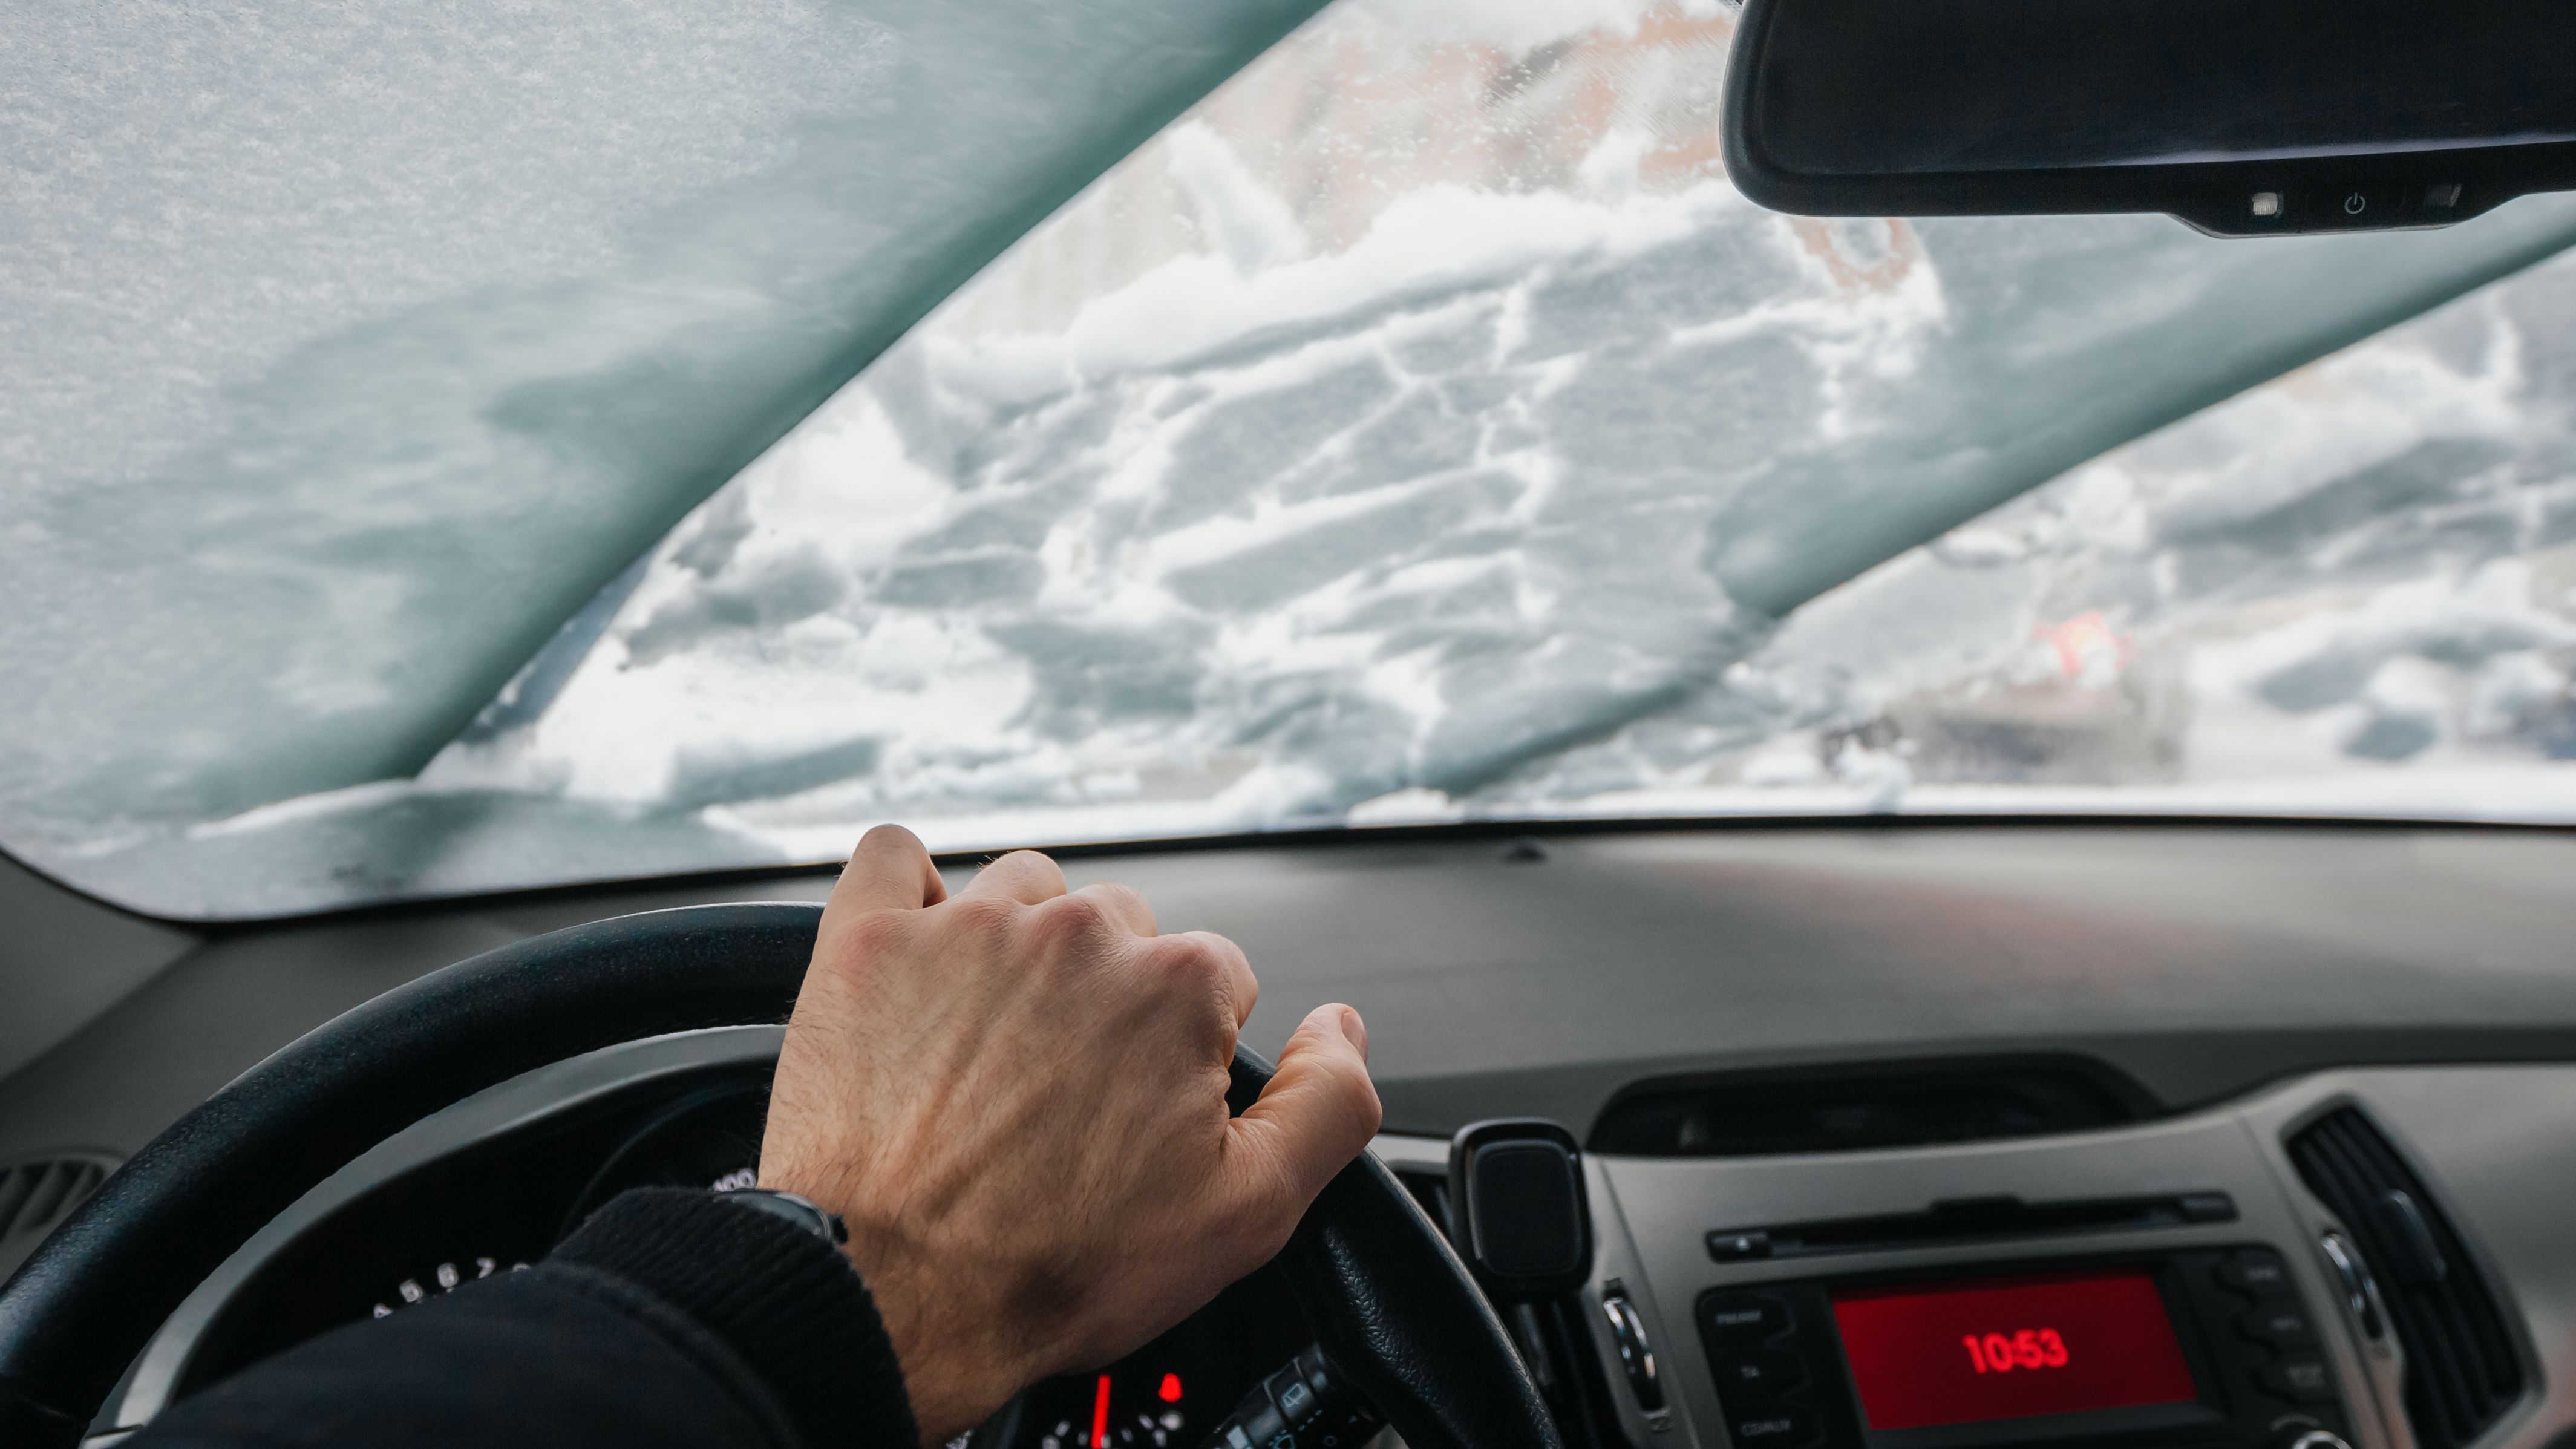 Trucos de la DGT para quitar el hielo del cristal del coche sin dañarlo, rascador  hielo coche 